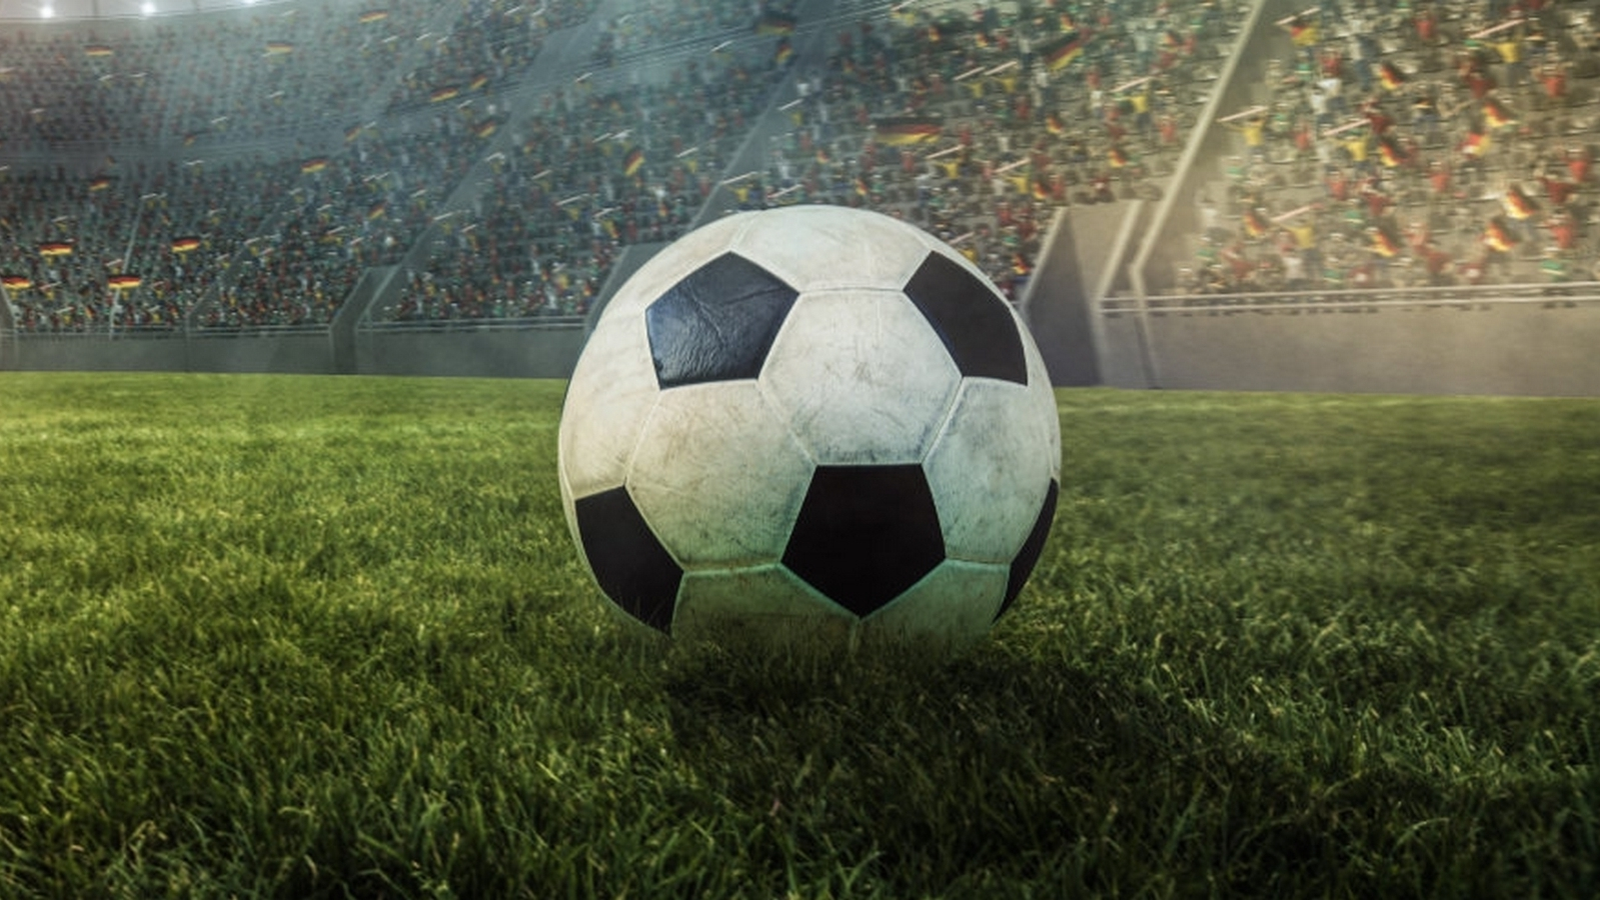 Anstoss 2022: Fußball-Manager-Spiel kehrt zurück